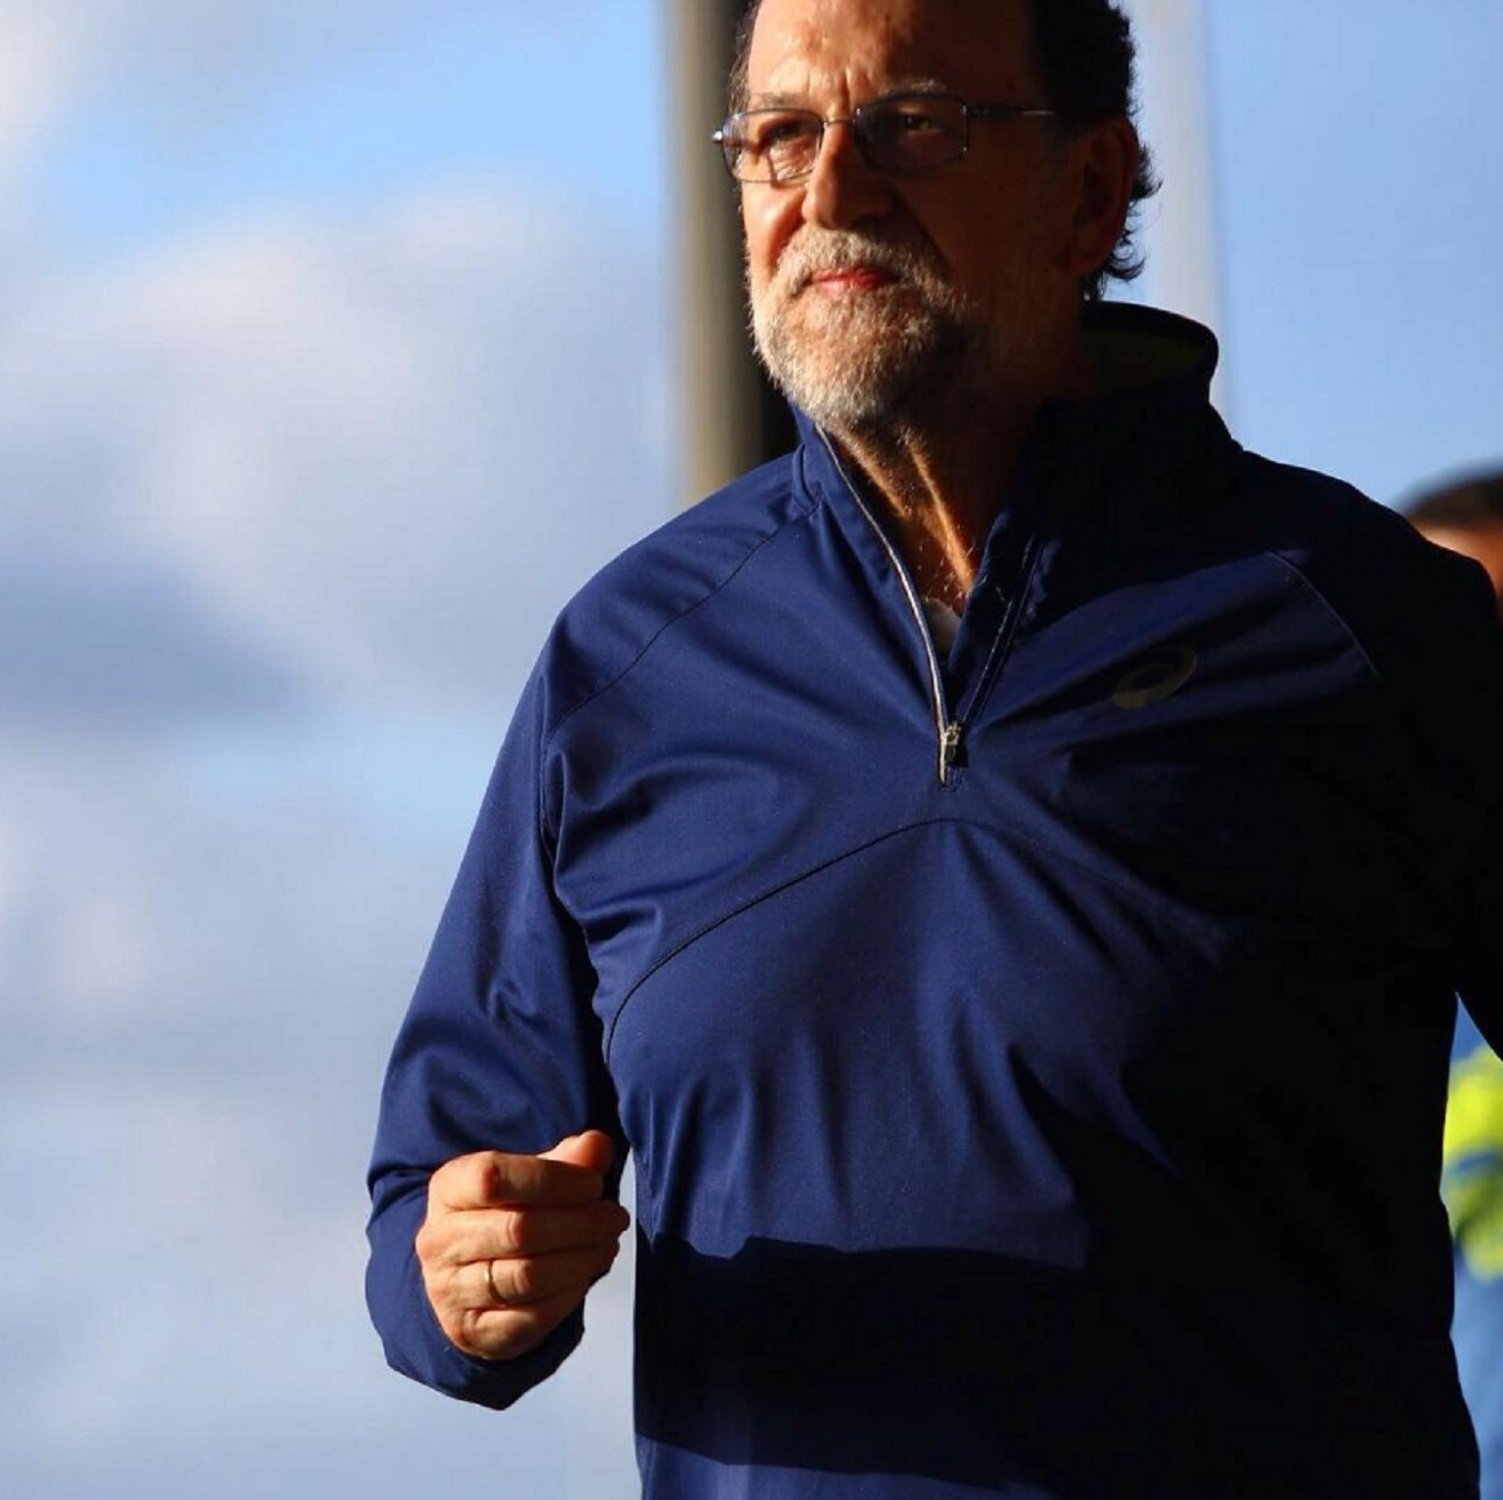 Què fa ara Rajoy? Sorna a RAC1 en sentir-lo: "Filósofo, Trankimazin! Fitxa'l Basté!"